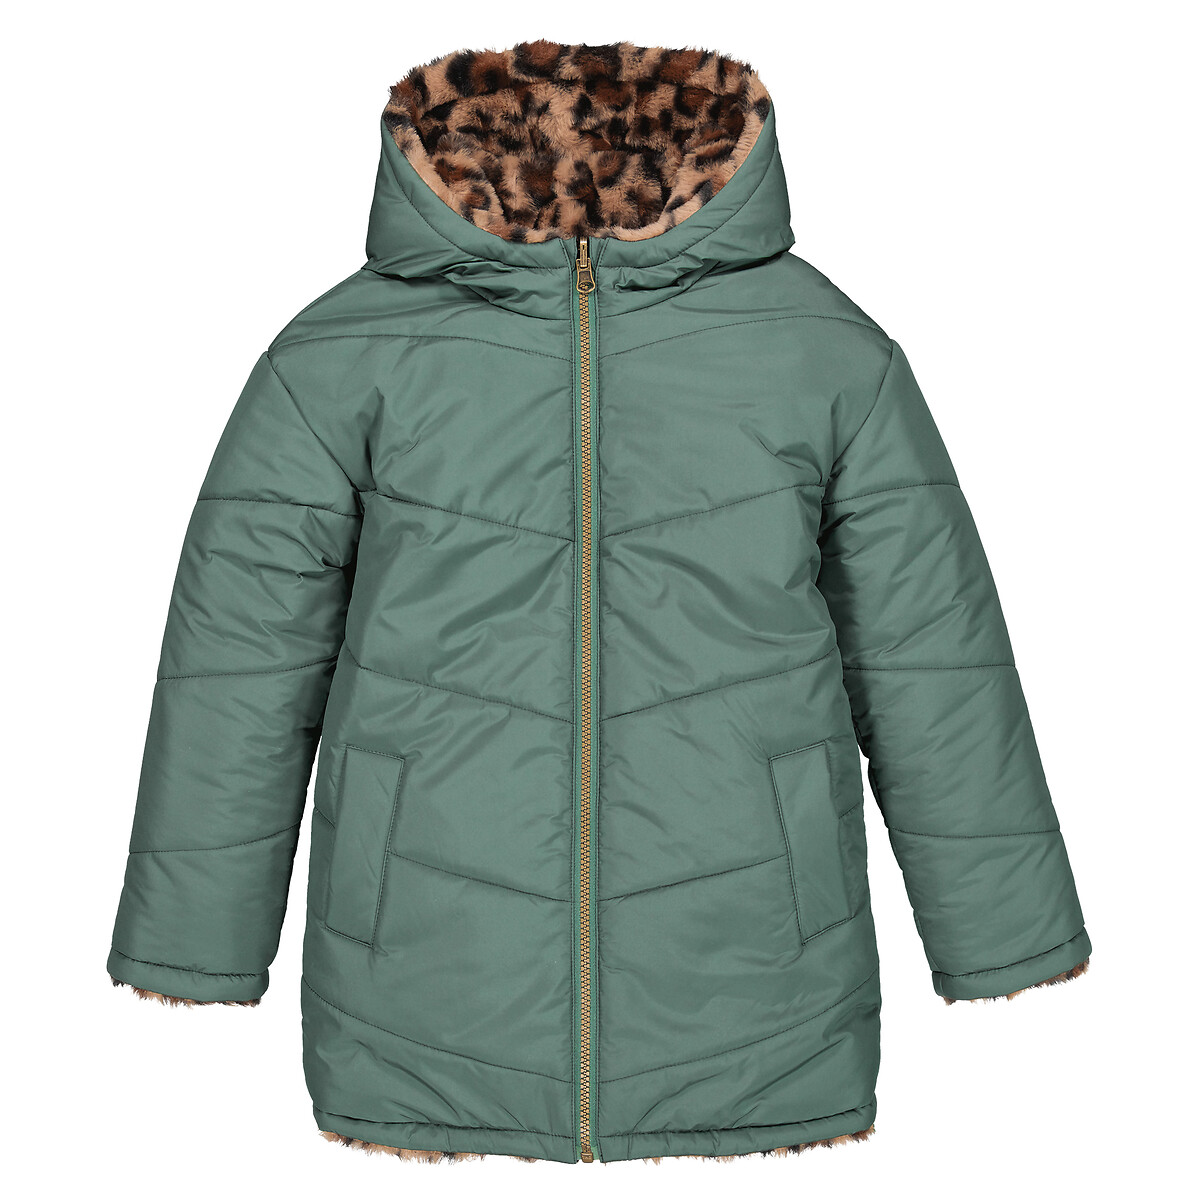 Куртка Стеганая утепленная двухсторонняя с капюшоном 4 года - 102 см зеленый LaRedoute, размер 4 года - 102 см - фото 3